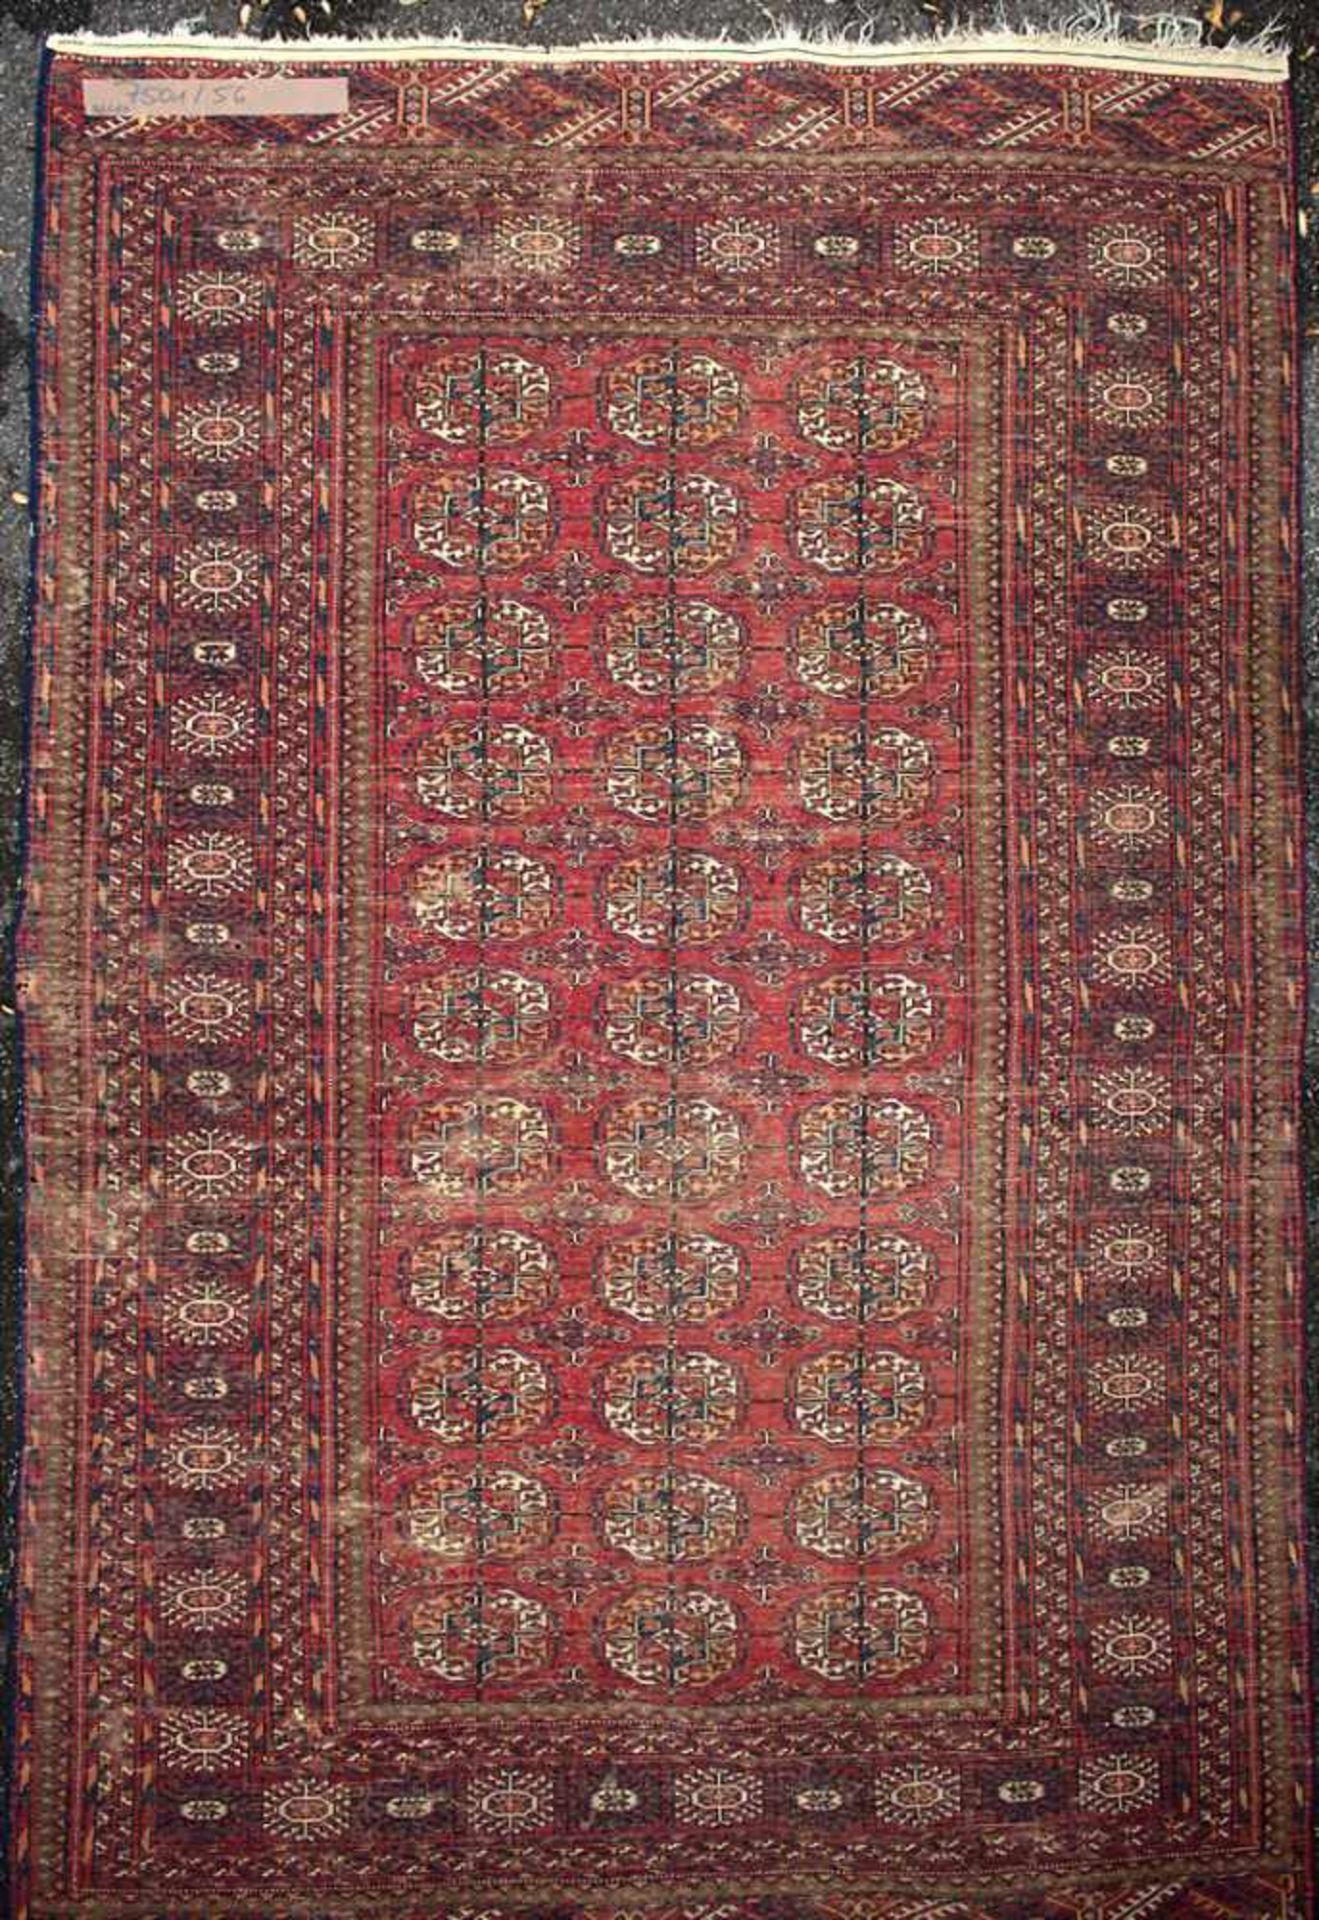 Orientteppich / An oriental carpetMaterial: Wolle auf Baumwolle, Maße: 256 x 160 cm, Zustand: - Image 2 of 5